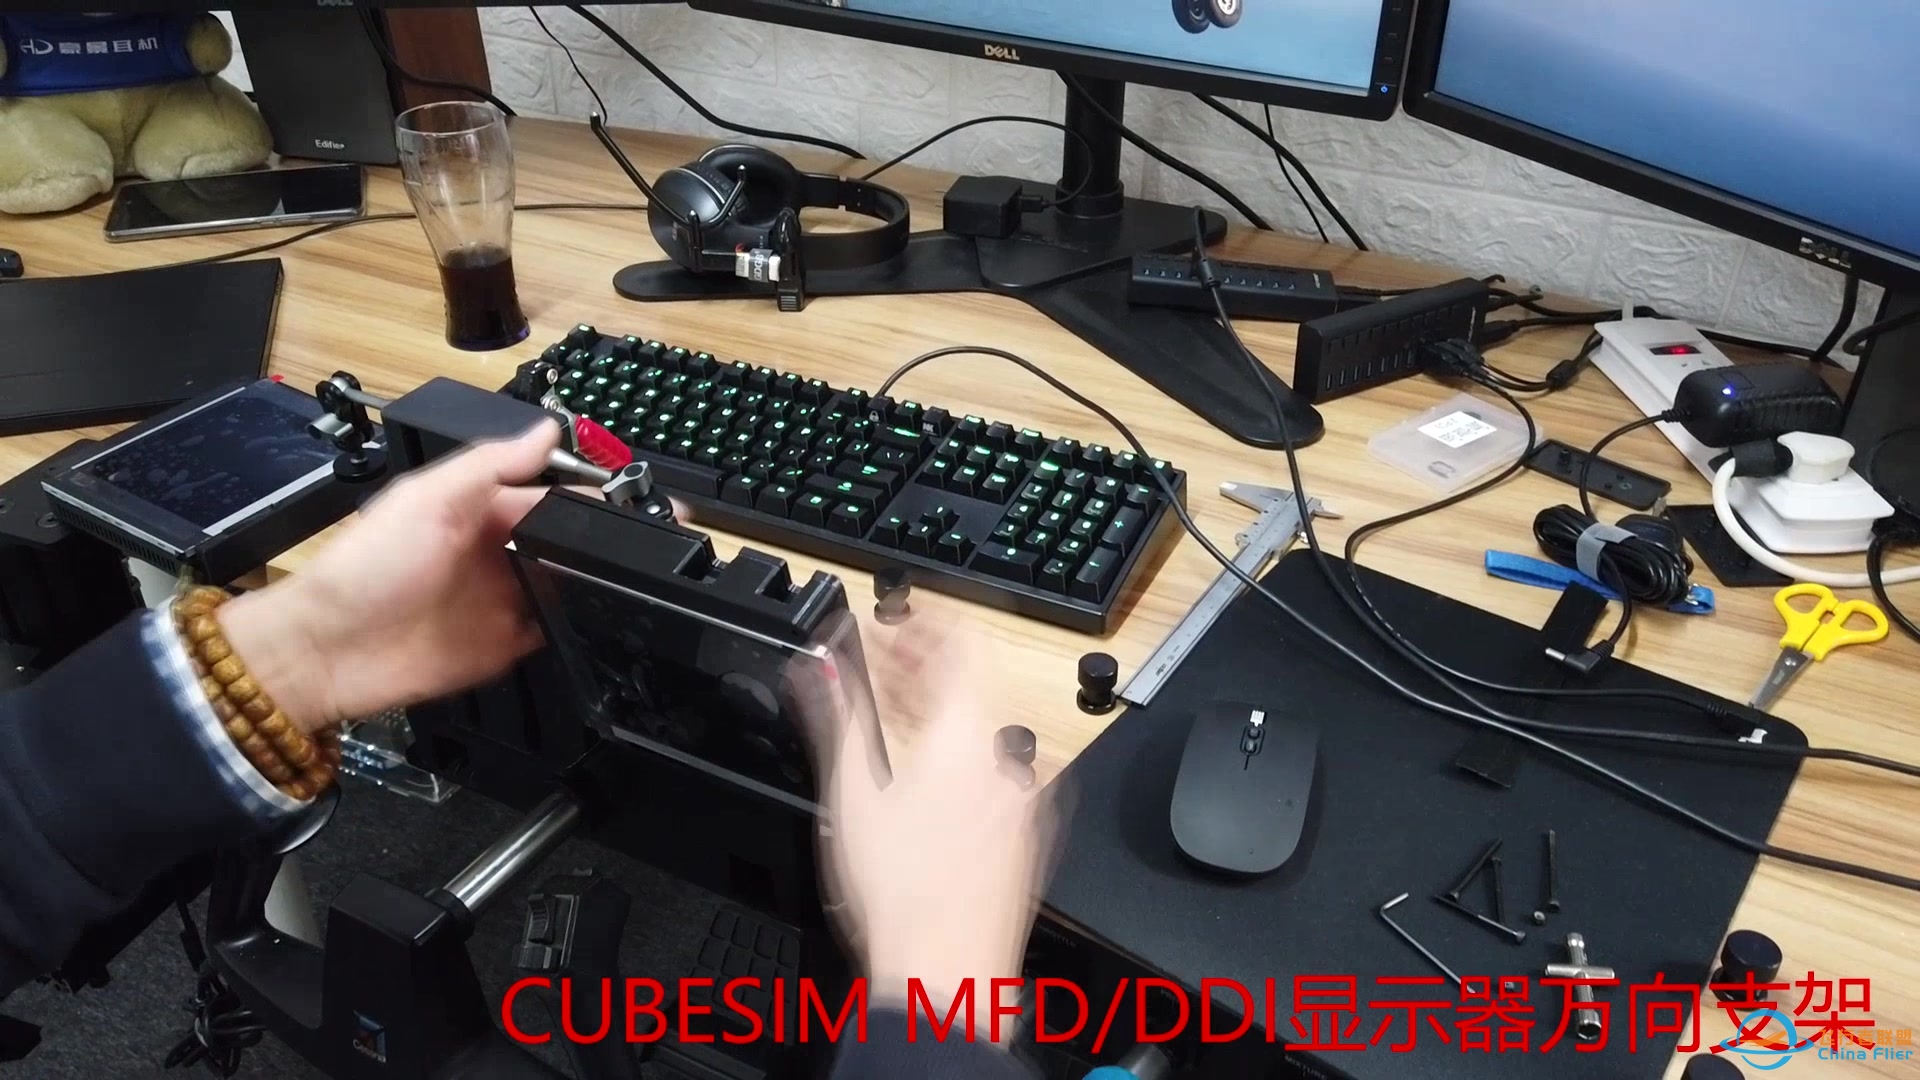 CUBESIM 飞行摇杆&amp;amp;MFD/DDI显示器 桌面支架-403 